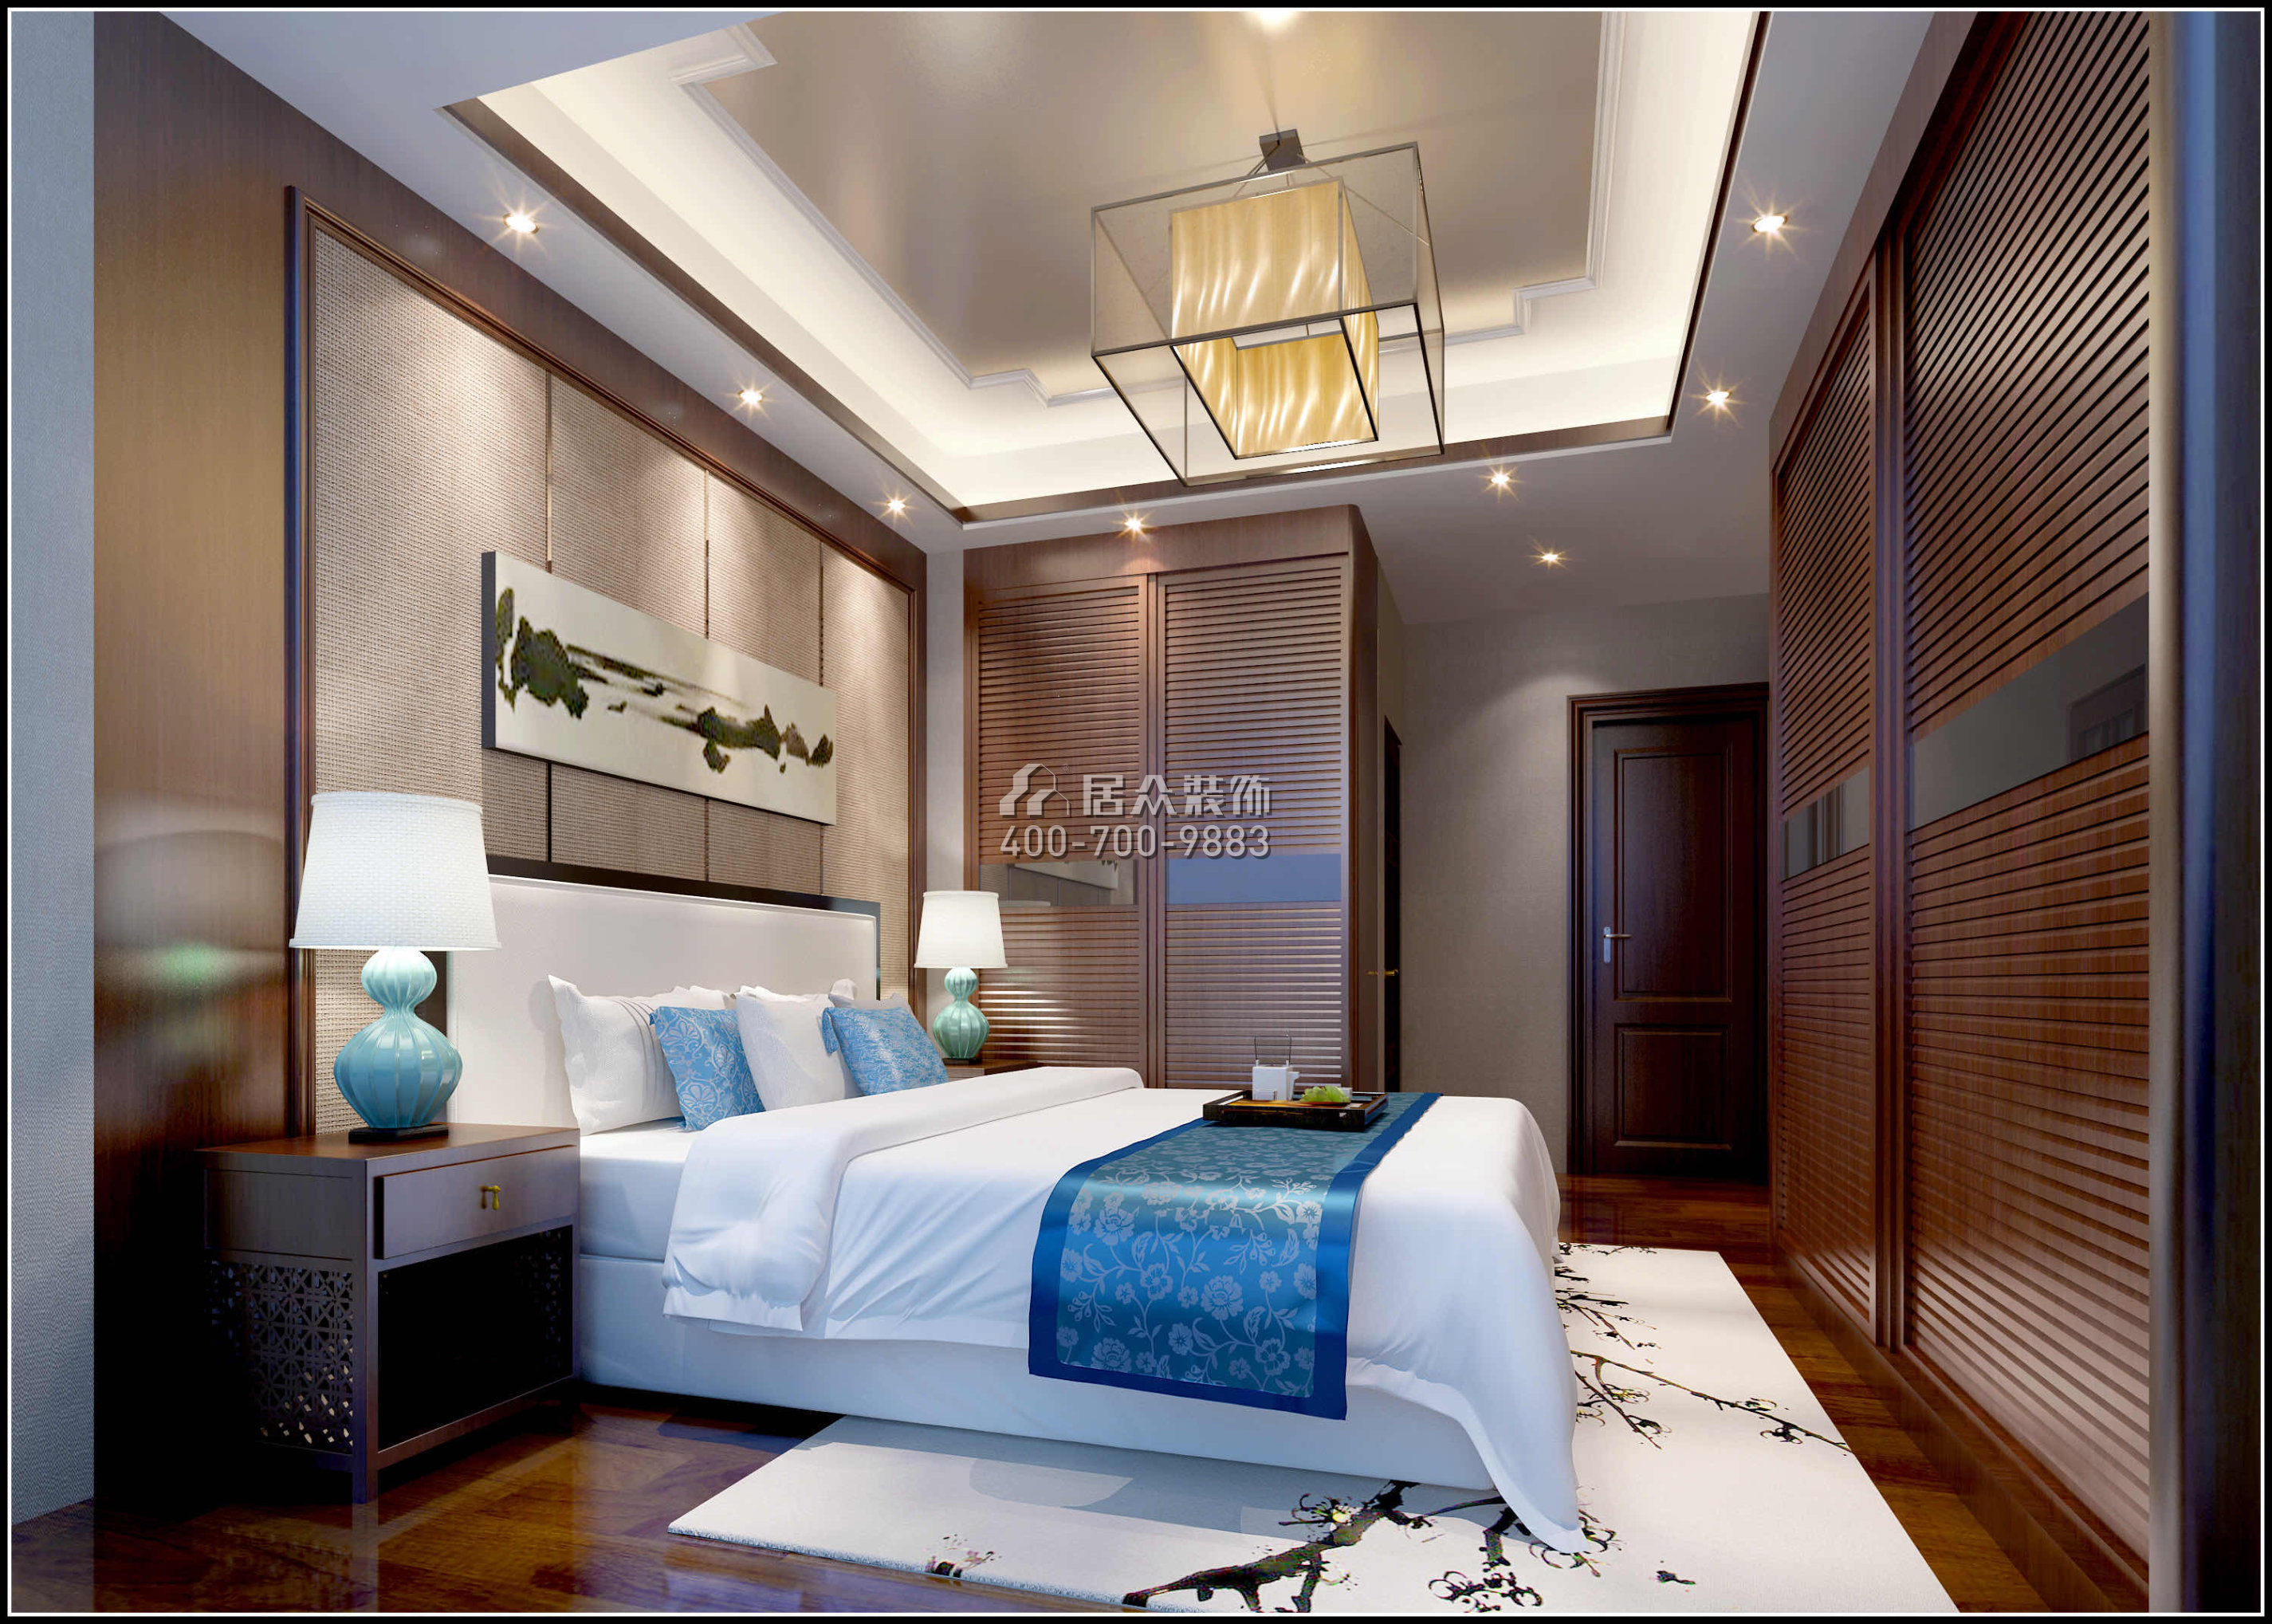 君悦龙庭205平方米中式风格平层户型卧室装修效果图